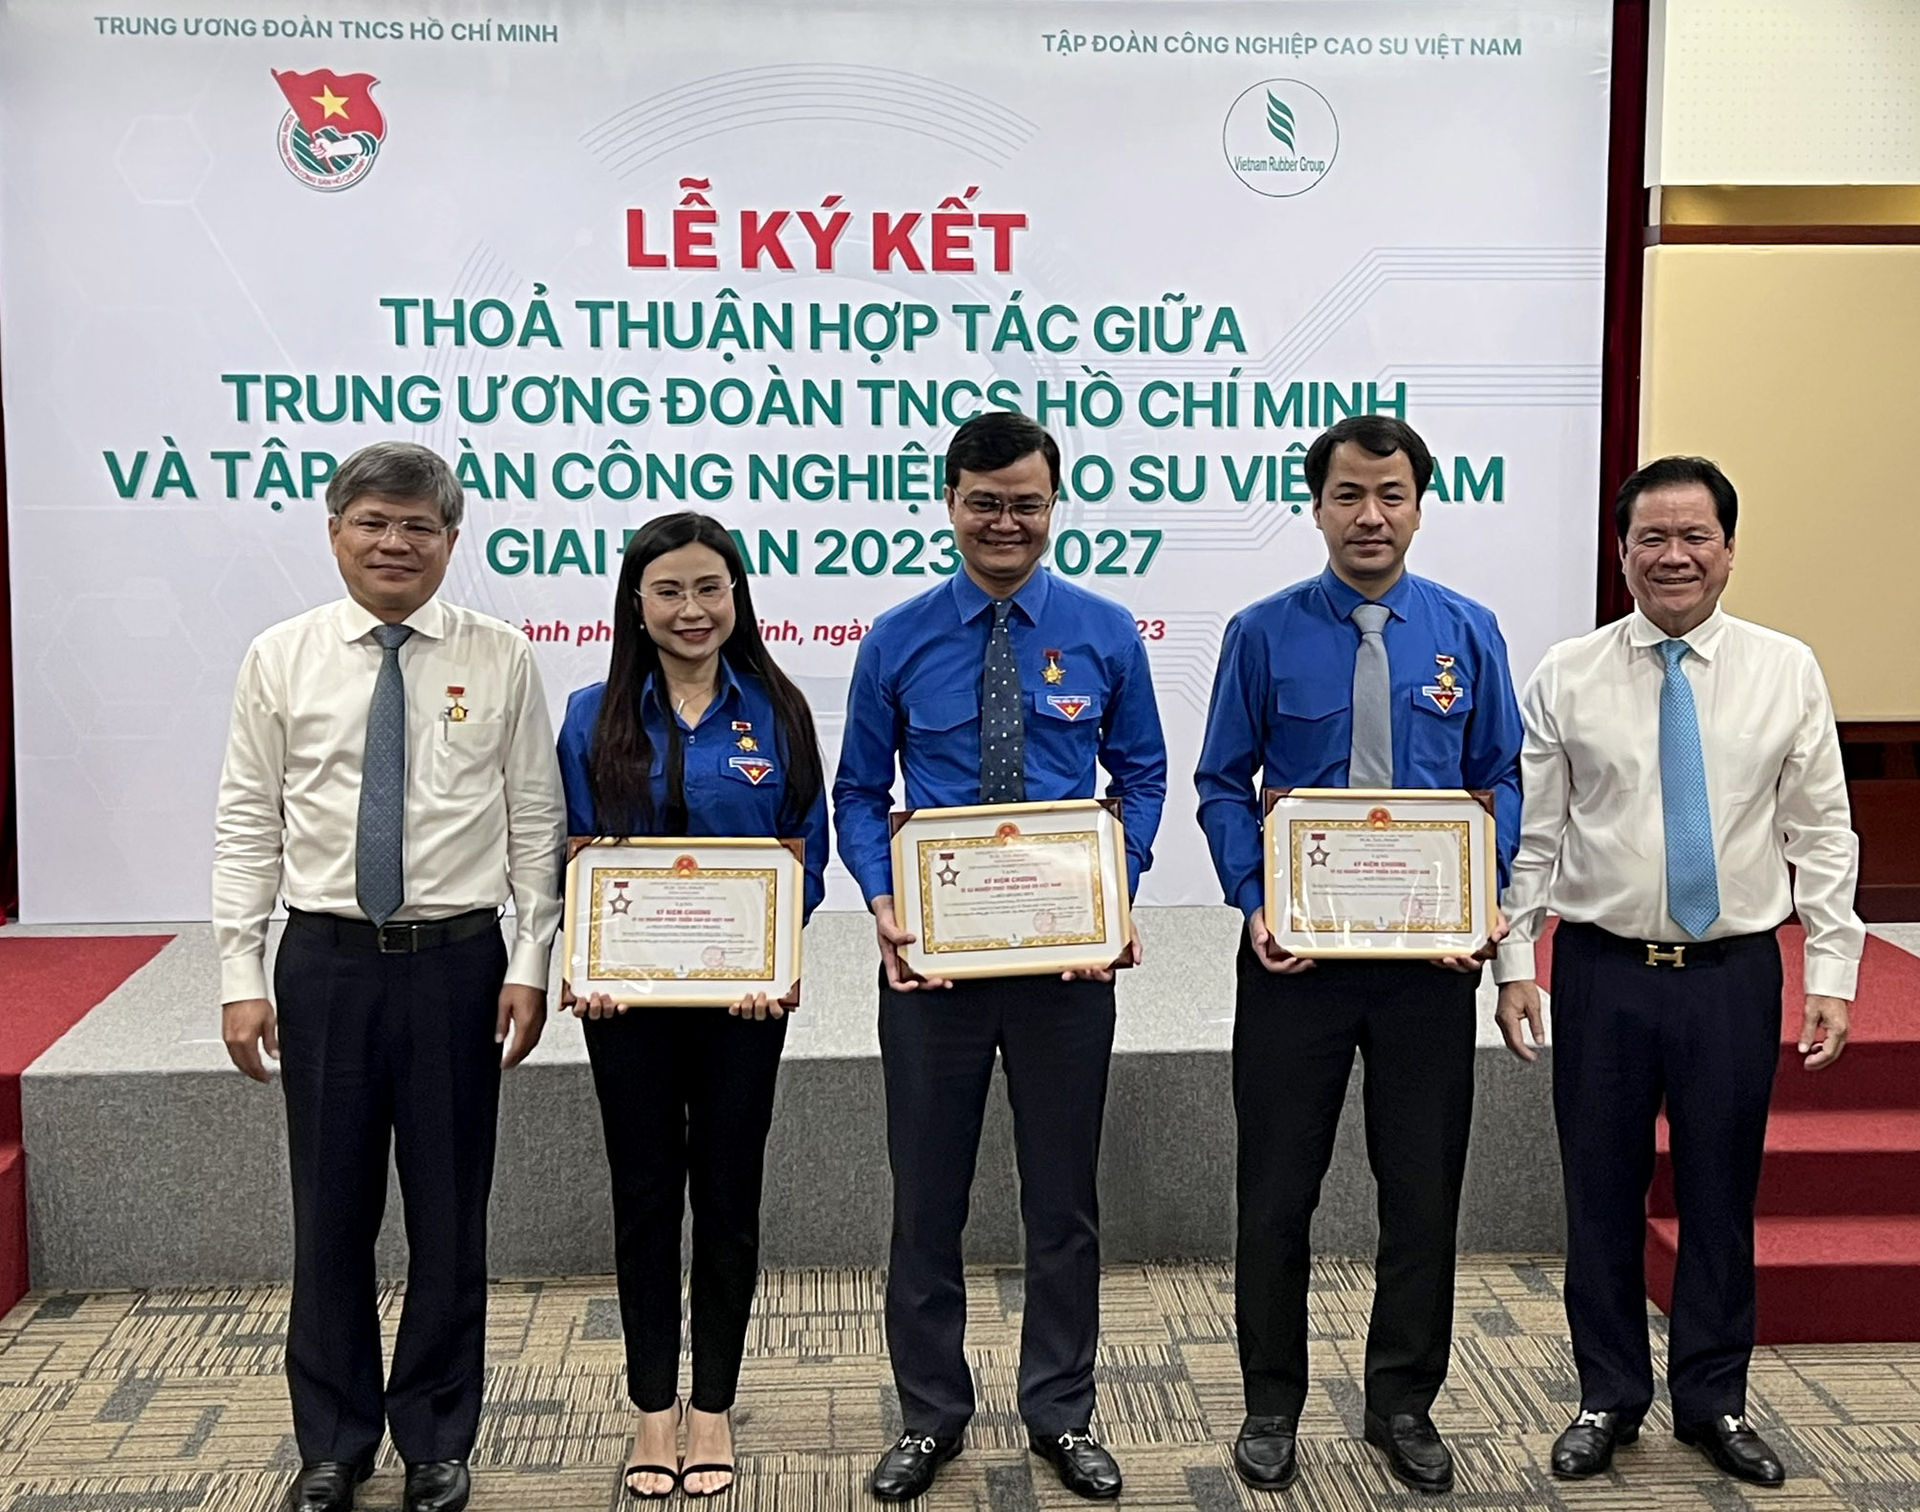 Lãnh đạo VRG trao tặng Kỷ niệm chương Vì sự nghiệp phát triển cao su Việt Nam cho một số lãnh đạo của Trung ương Đoàn TNCS Hồ Chí Minh. Ảnh: Thanh Sơn.